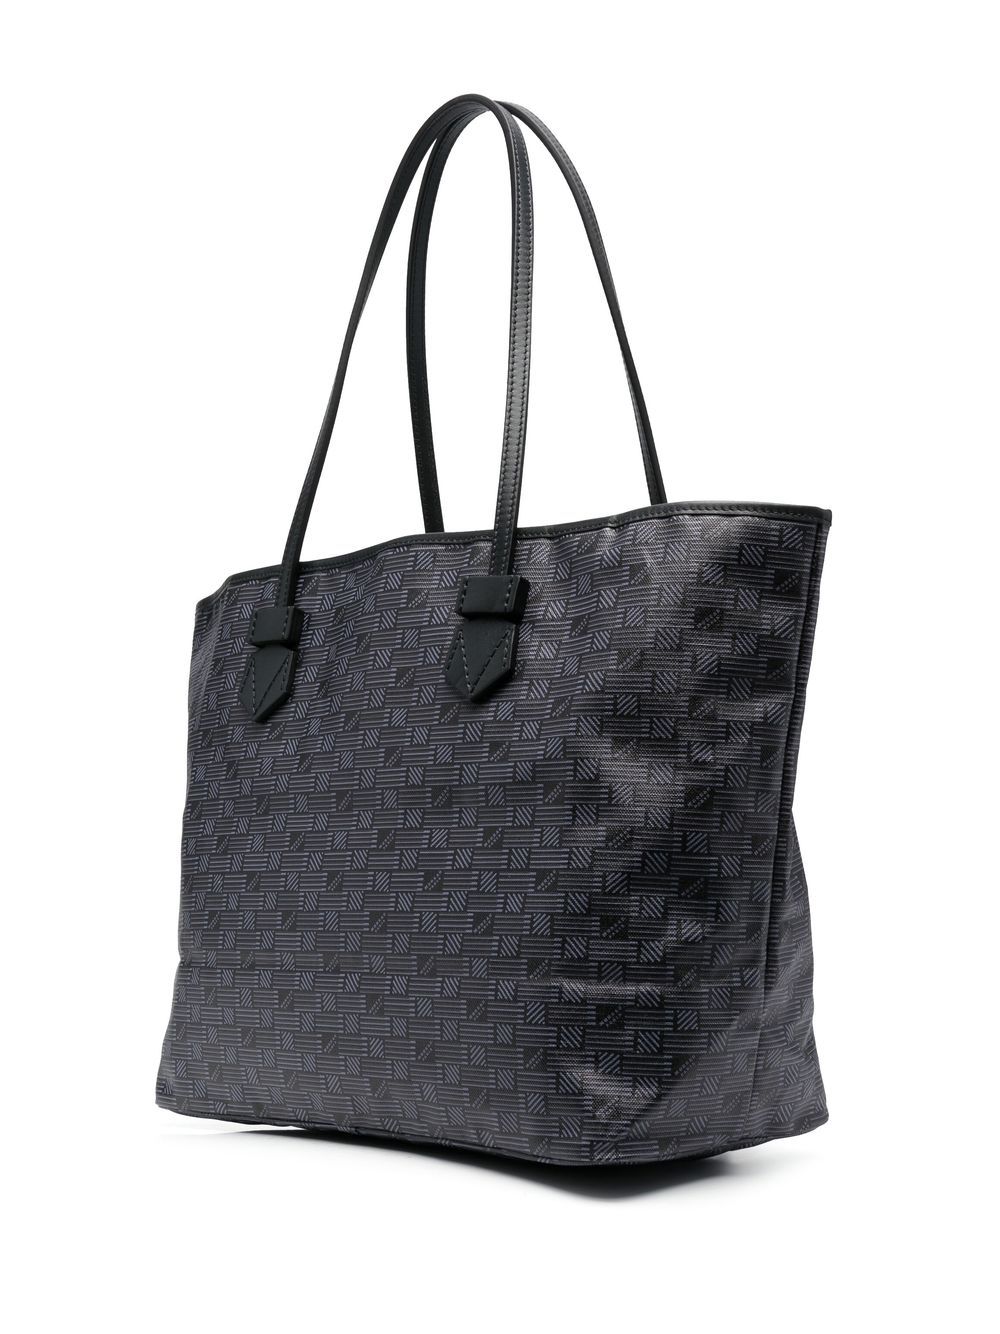 Saint Tropez Leather Shoulder Bag - Marmalade